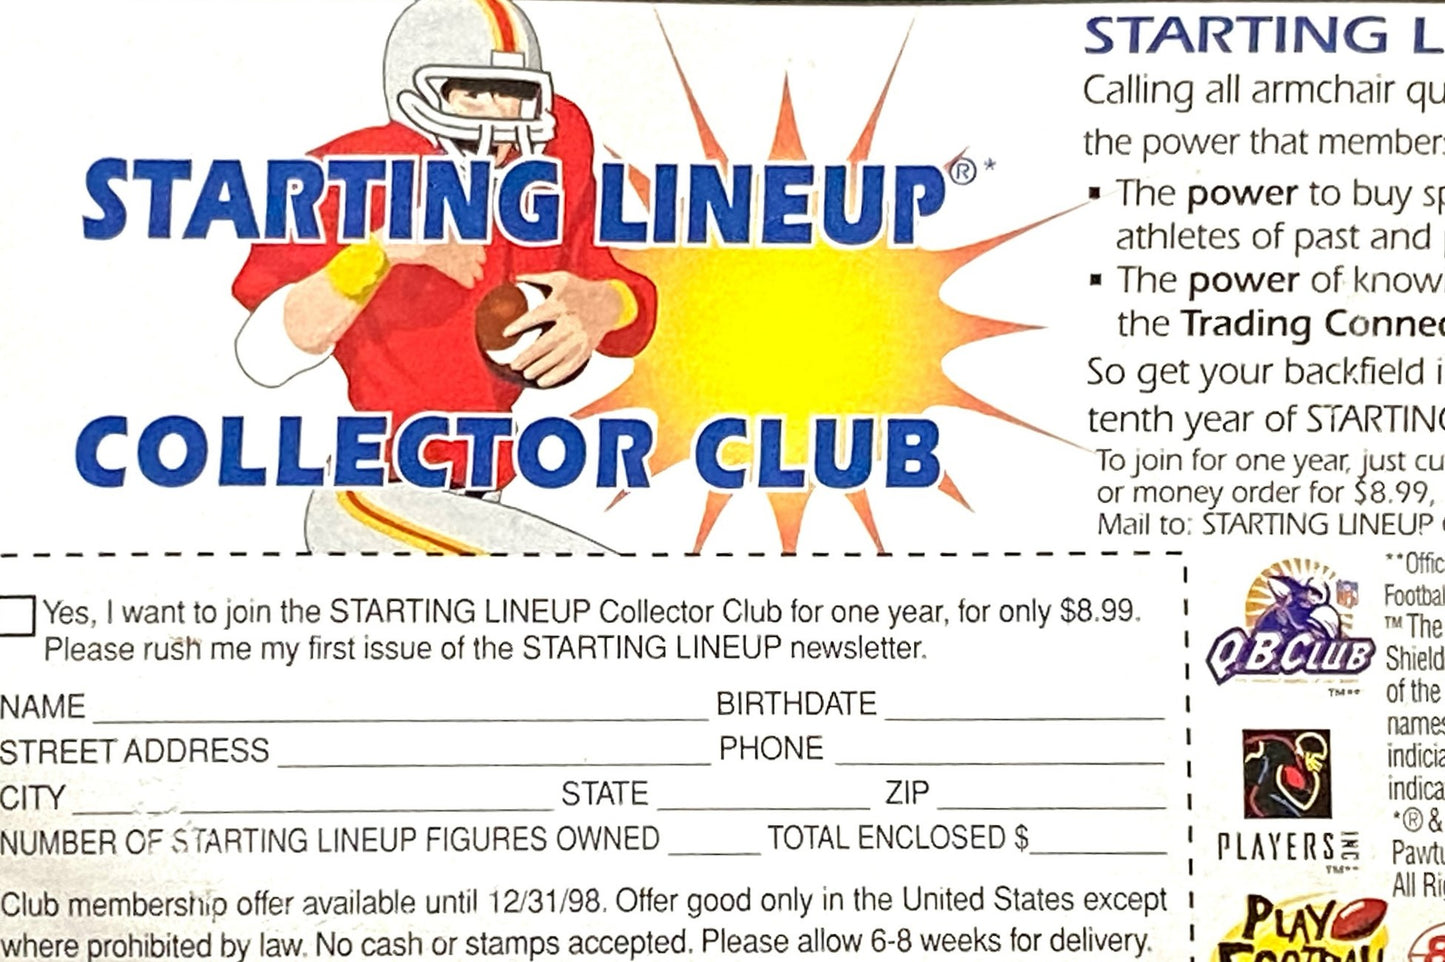 Mark Brunell 1997 NFL Jacksonville Jaguars Starting Lineup Figurine NOS by Kenner